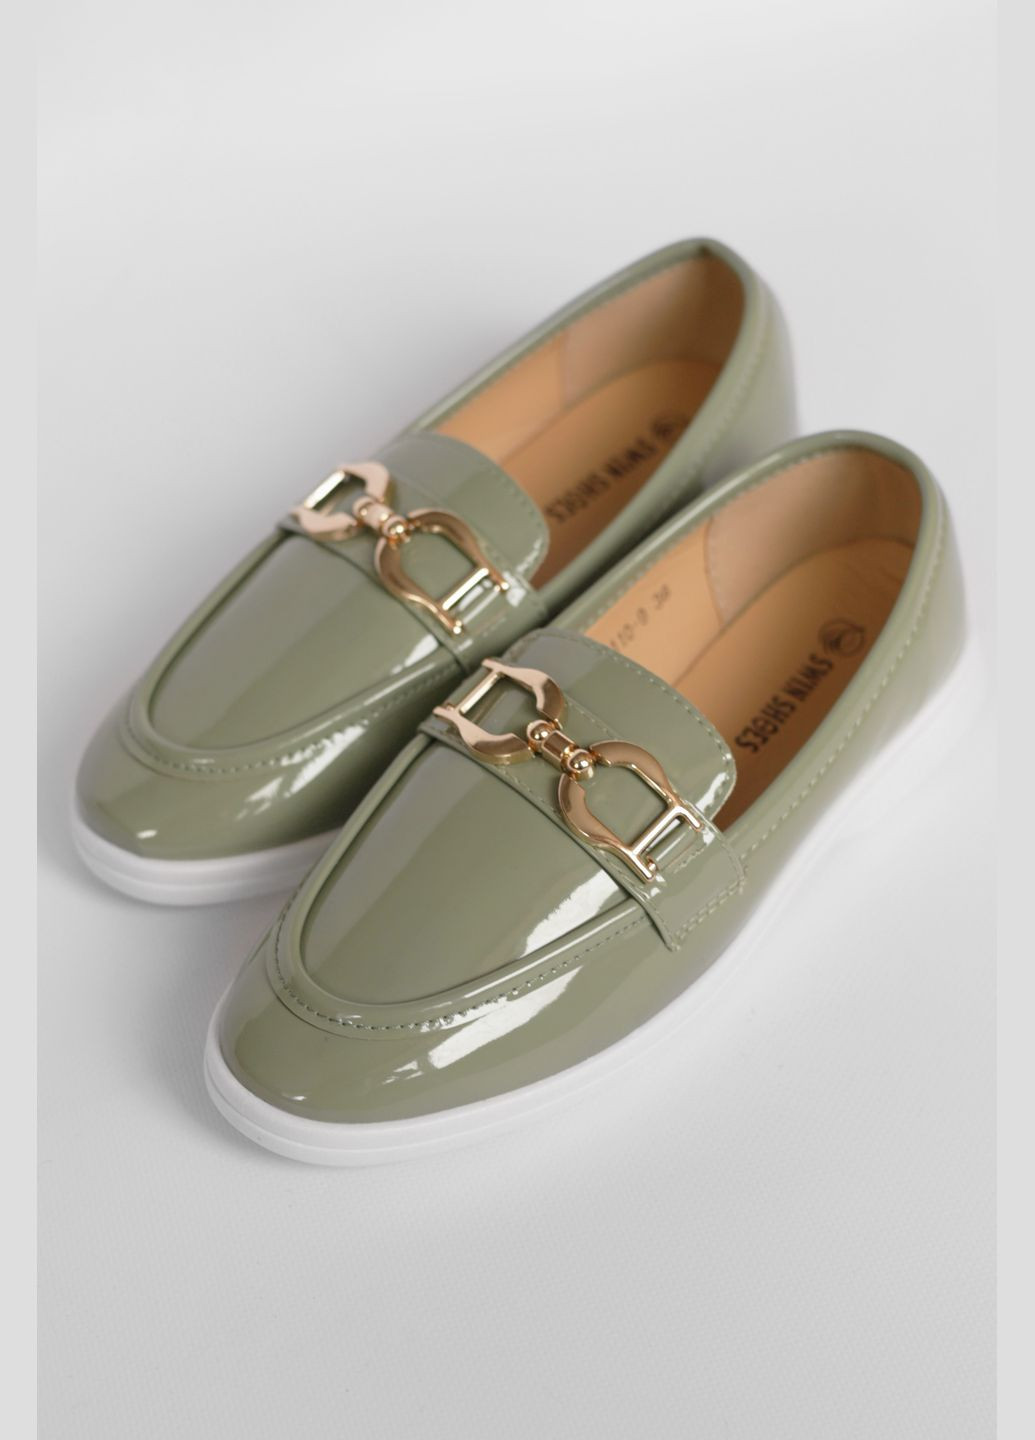 Туфли-лоферы женские оливкового цвета Let's Shop с цепочками